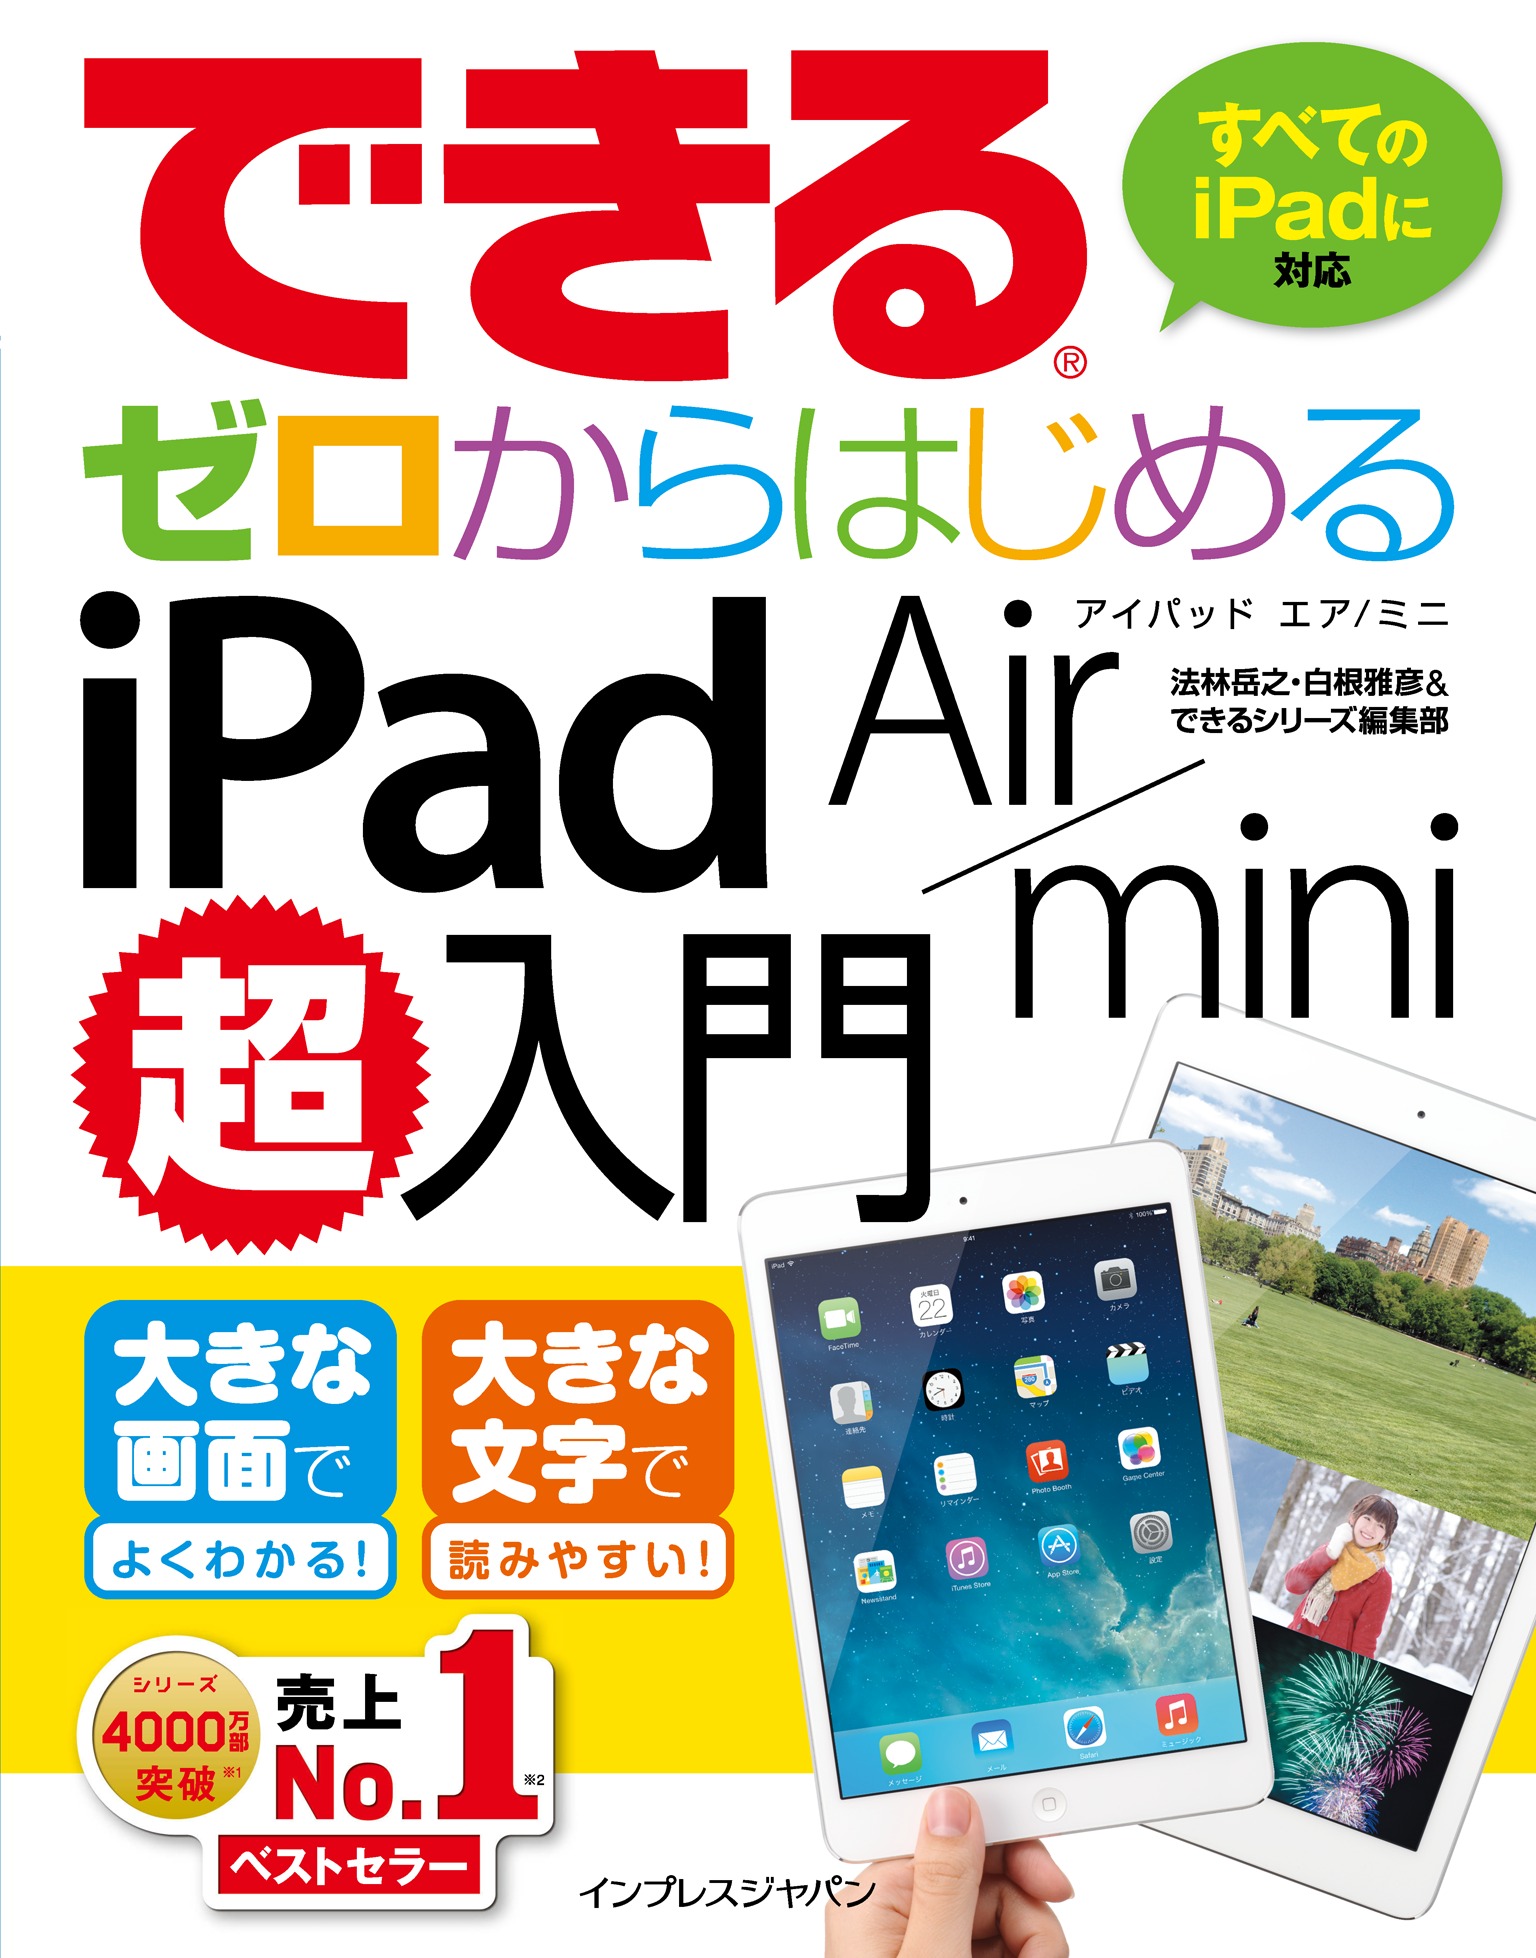 オープニング 48歳からのiPad入門 iPad mini Pro対応